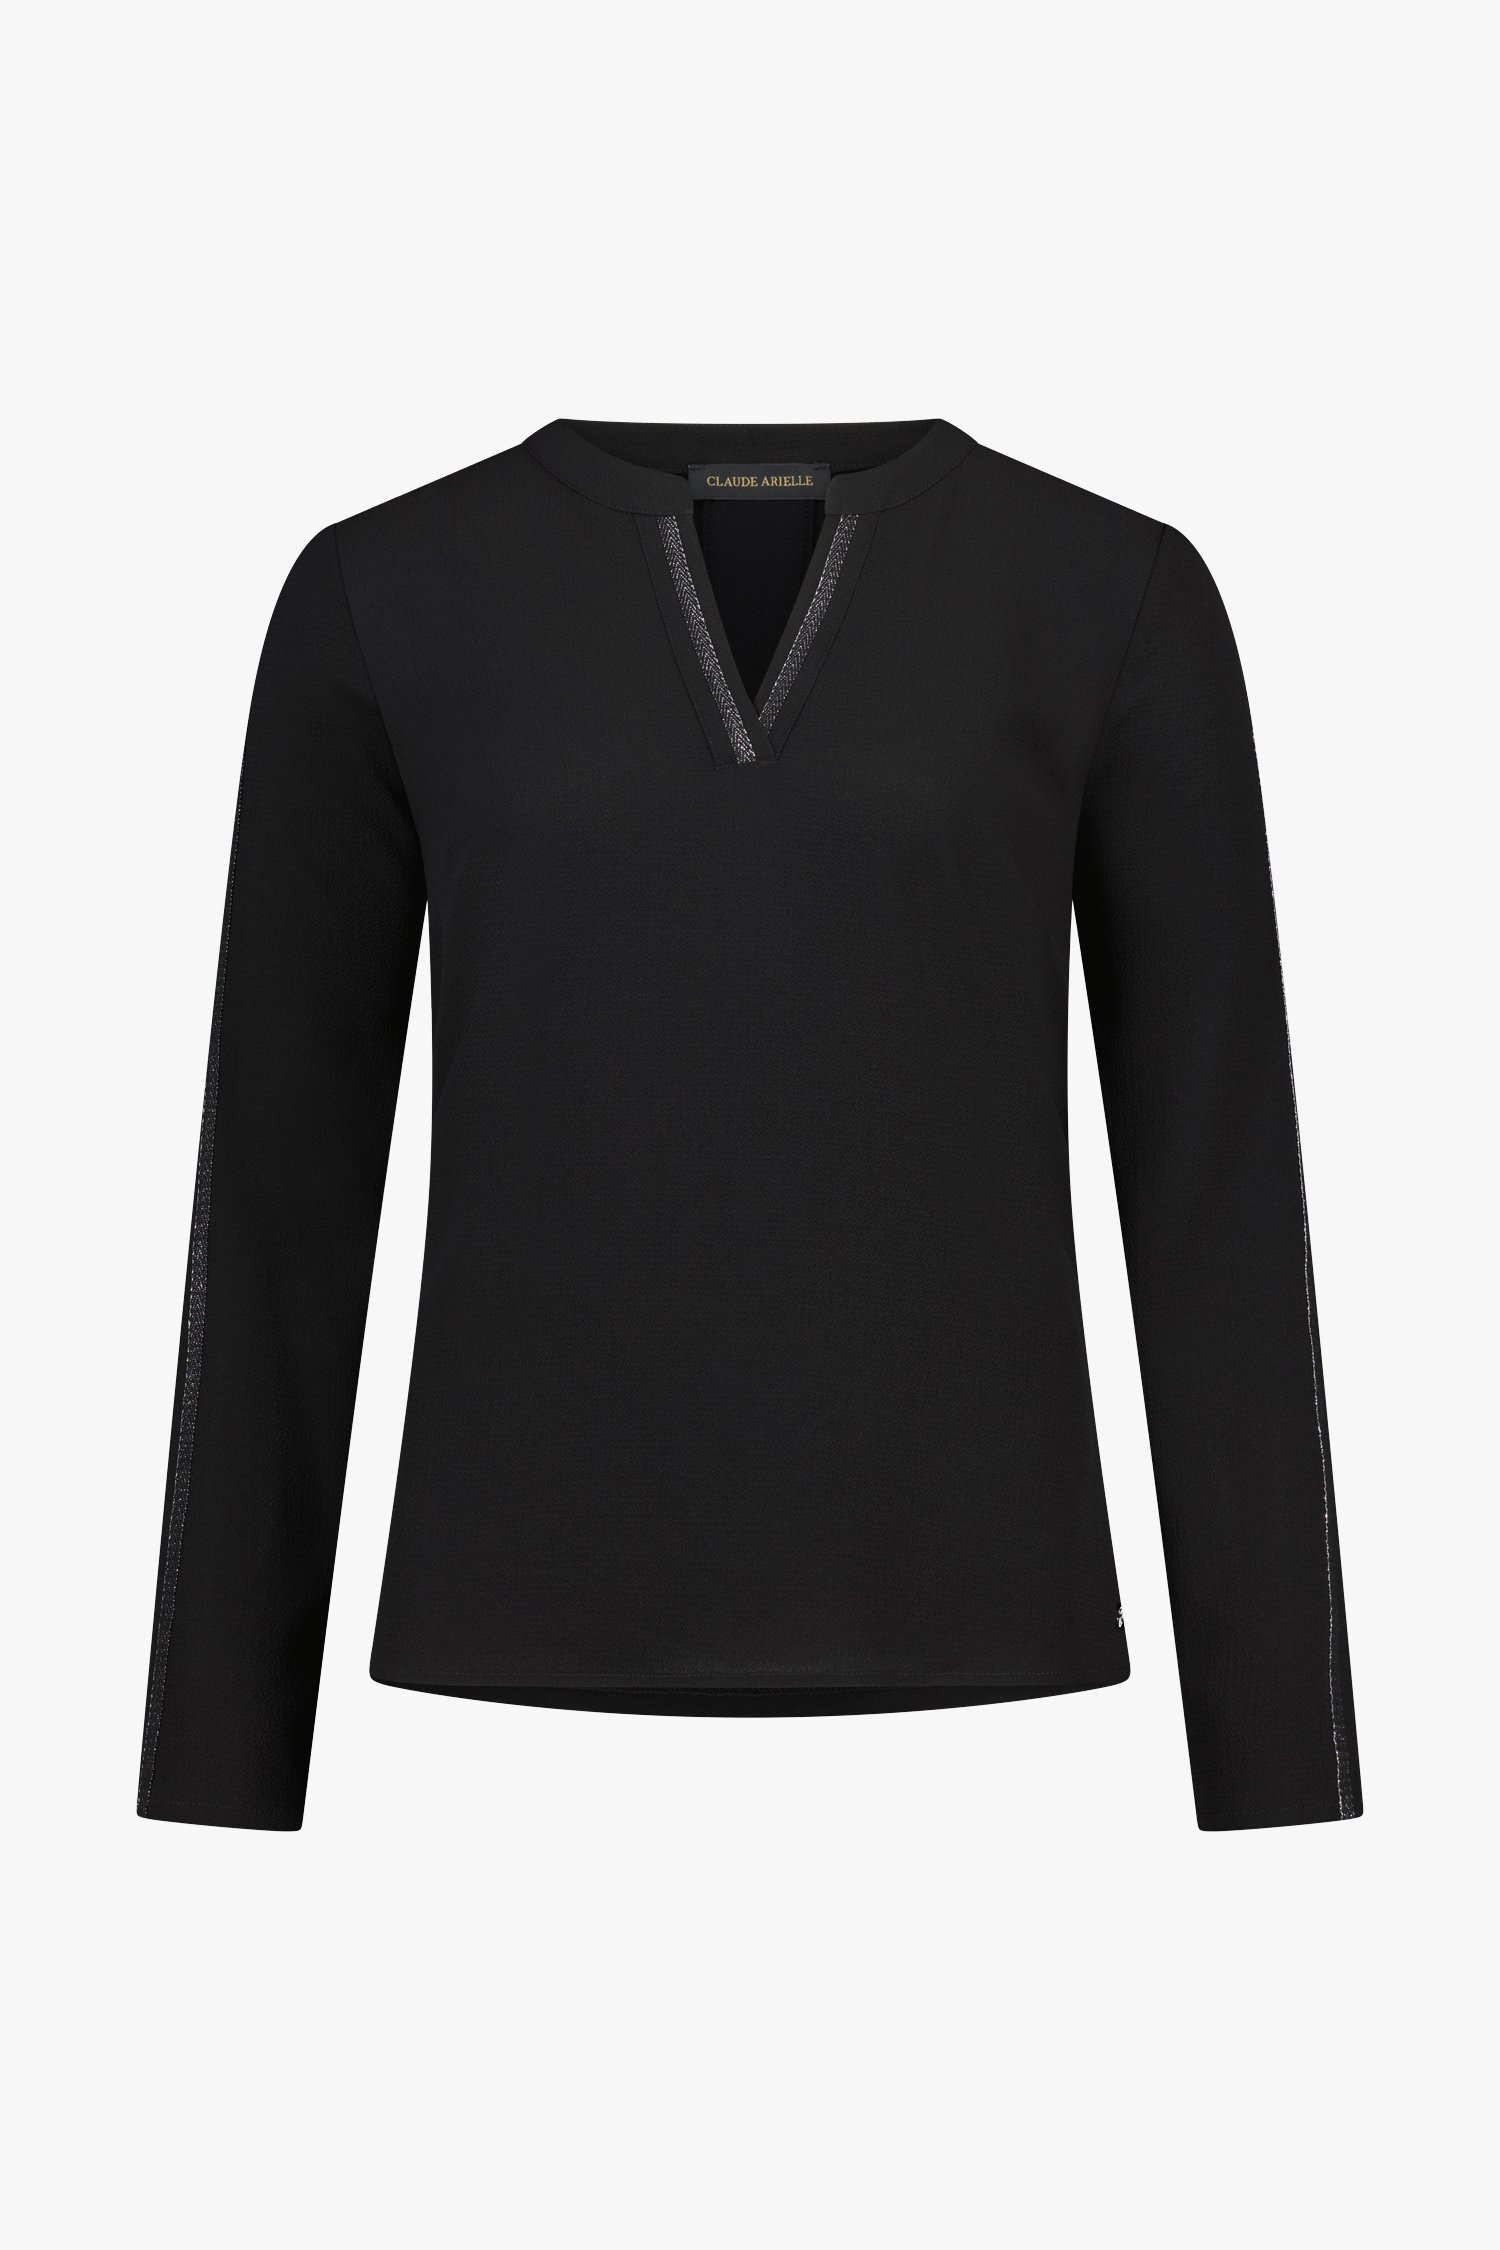 Zwarte blouse met V-hals van Claude Arielle voor Dames